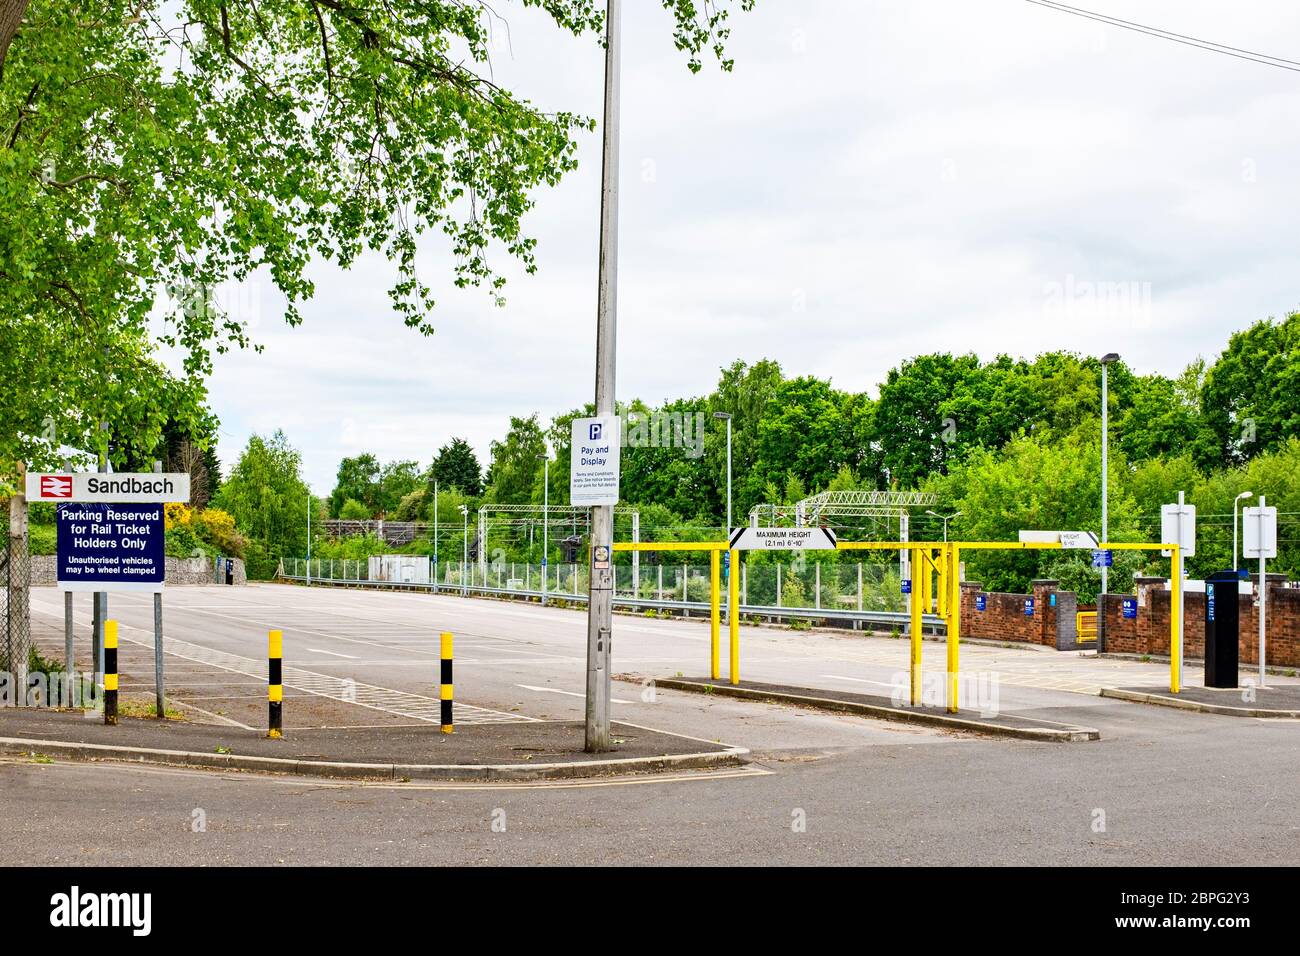 Parking abandonné, à cause du coronavirus, à la gare de Sandbach Cheshire, Royaume-Uni Banque D'Images